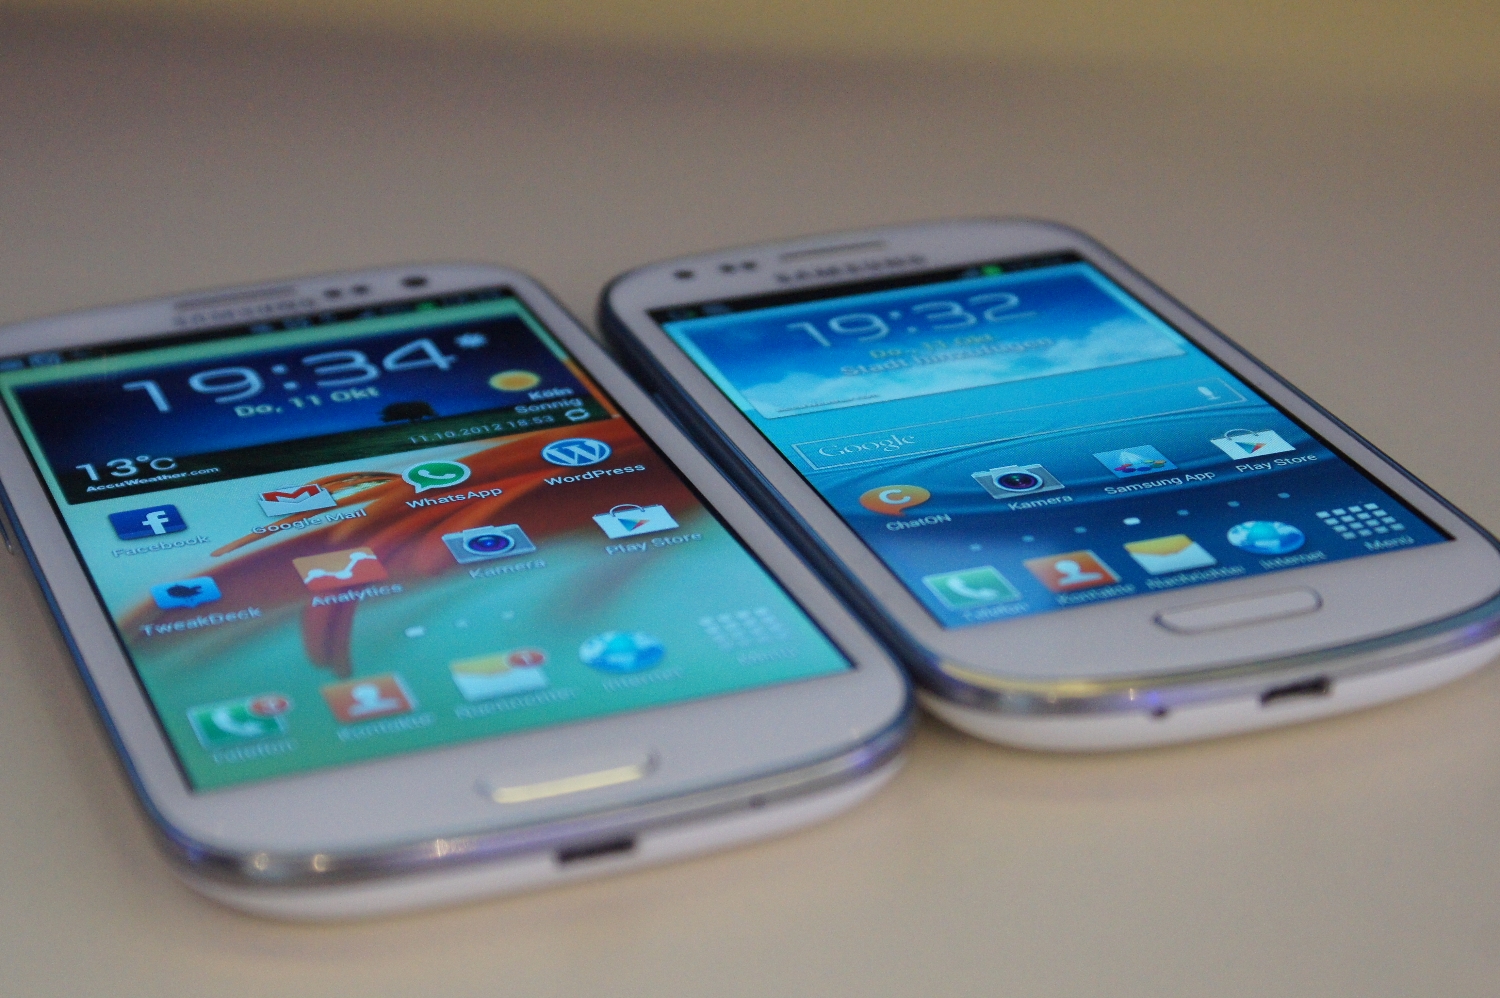 Samsung galaxy 3 8.0